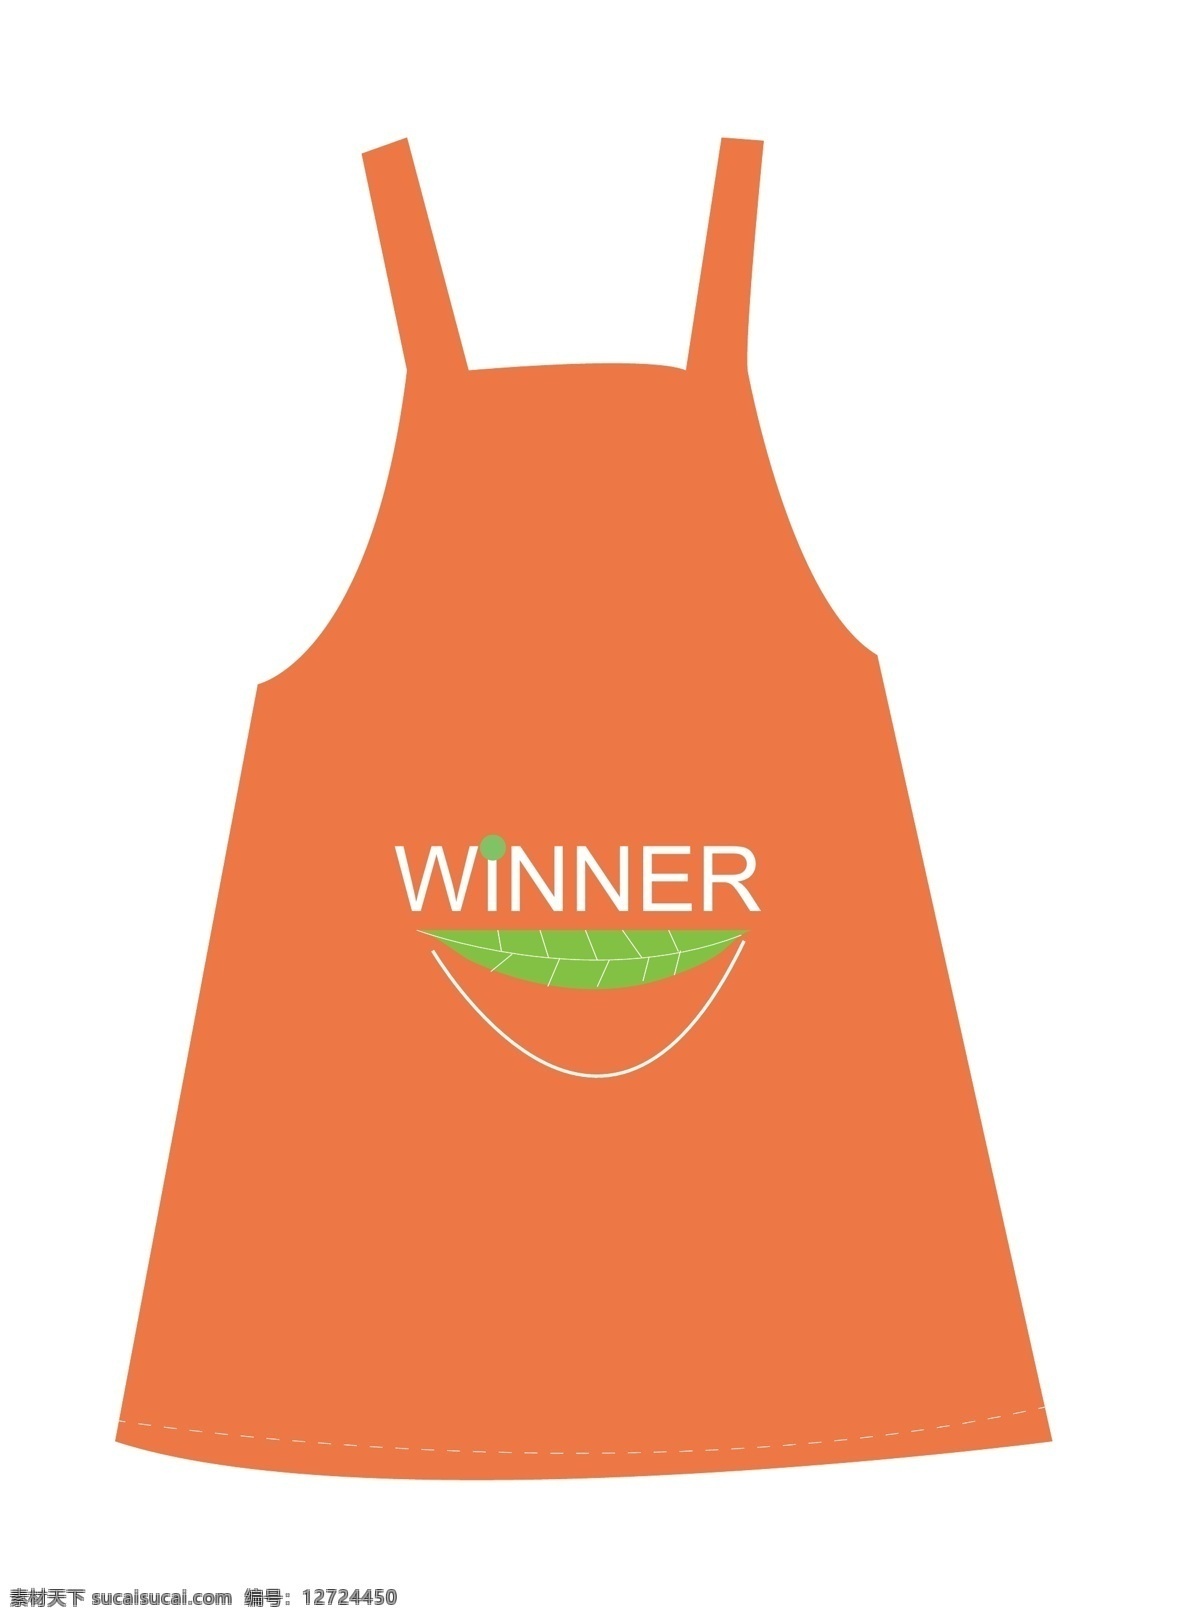 创意围裙 橘色背景 绿色 winner 绿叶 test 生活百科 生活用品